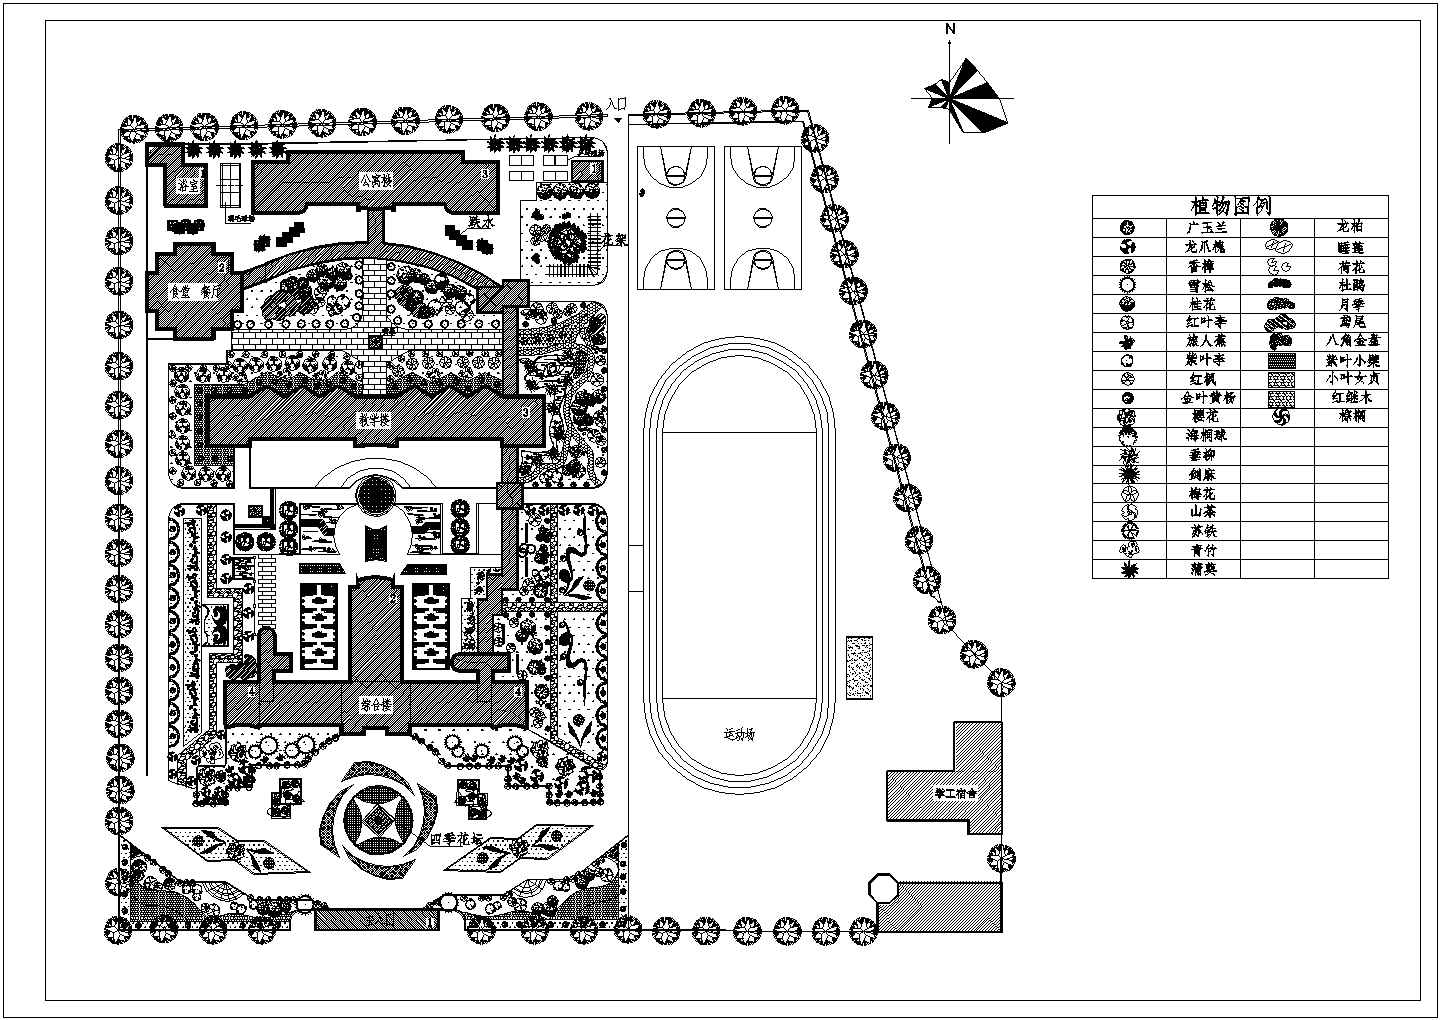 深圳市某高等院校校园平面绿化规划设计CAD图纸